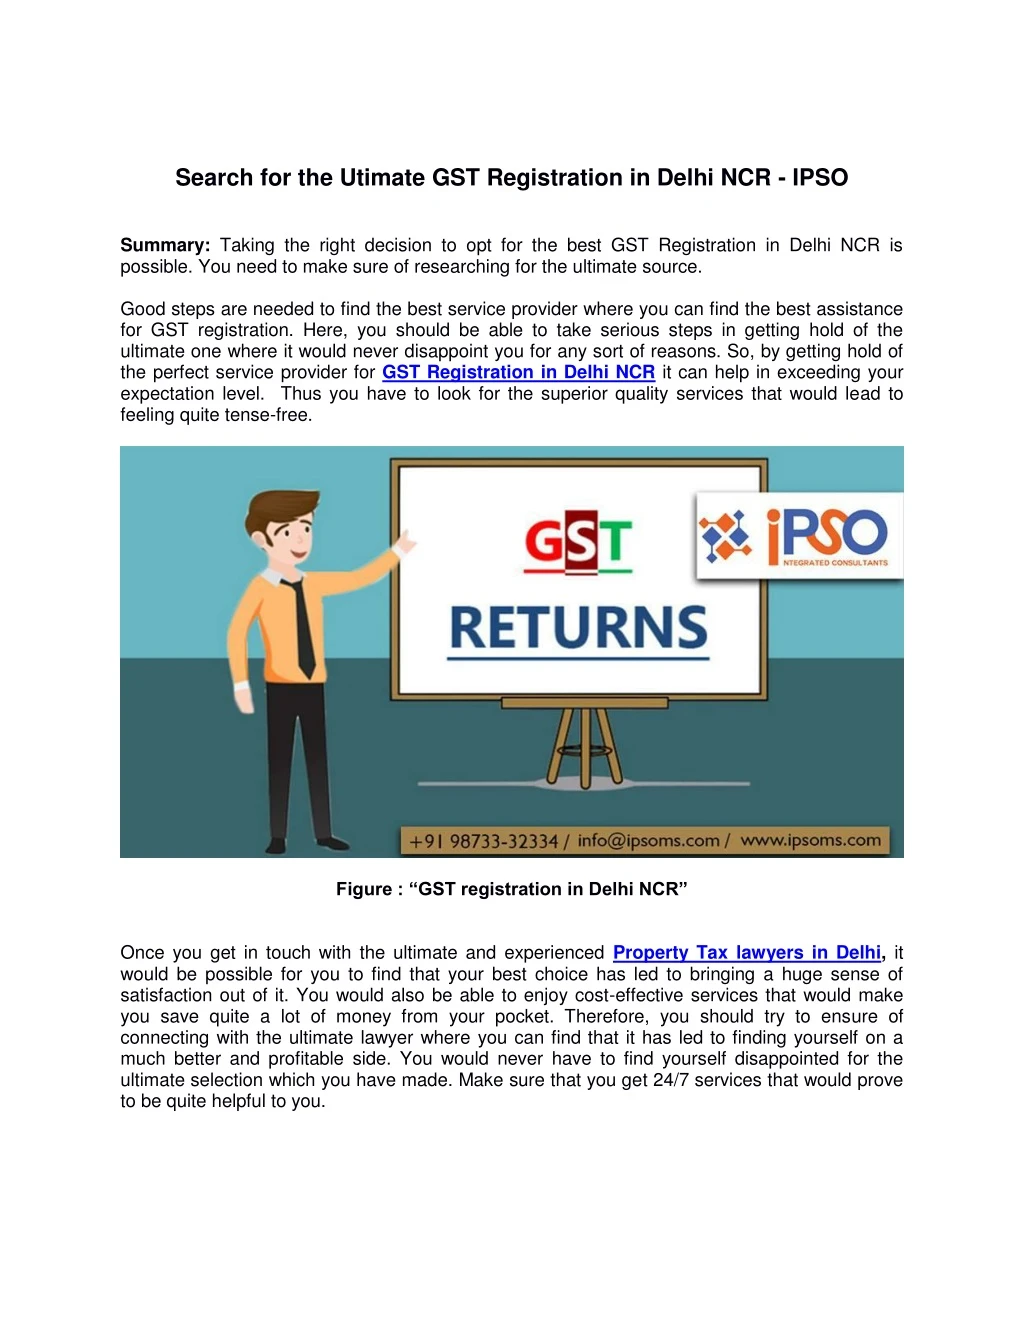 search for the utimate gst registration in delhi